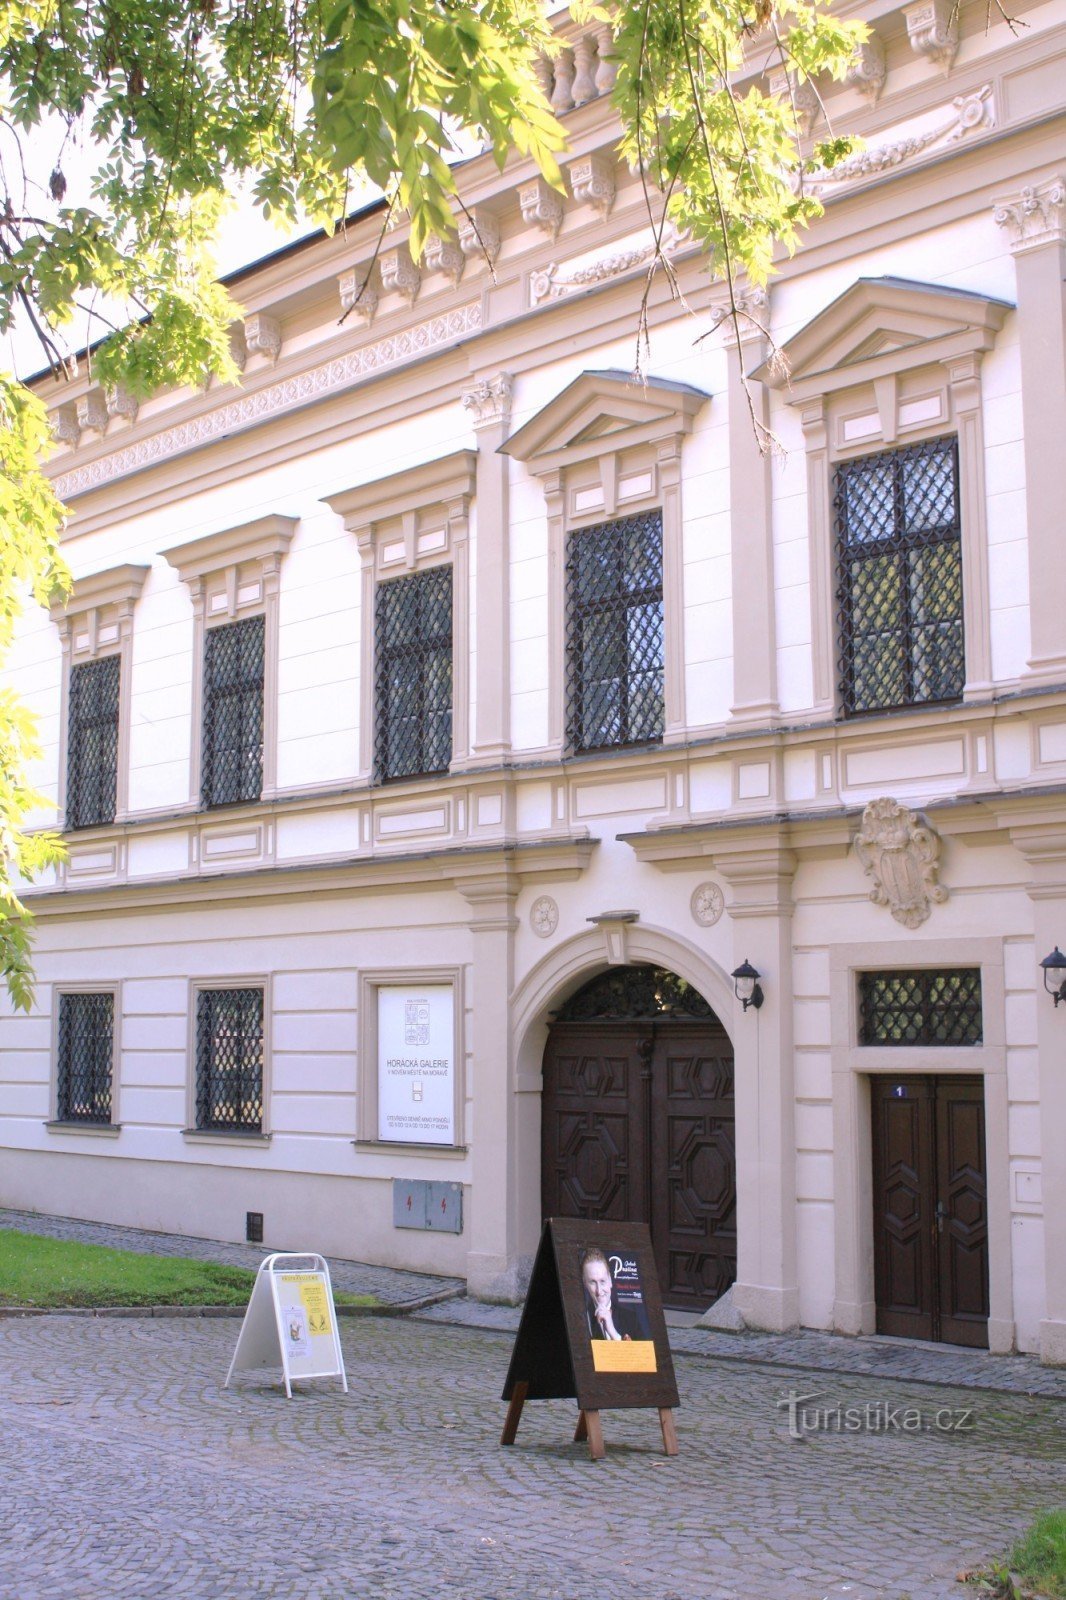 Entrance part of the castle (today Horácká gallery)